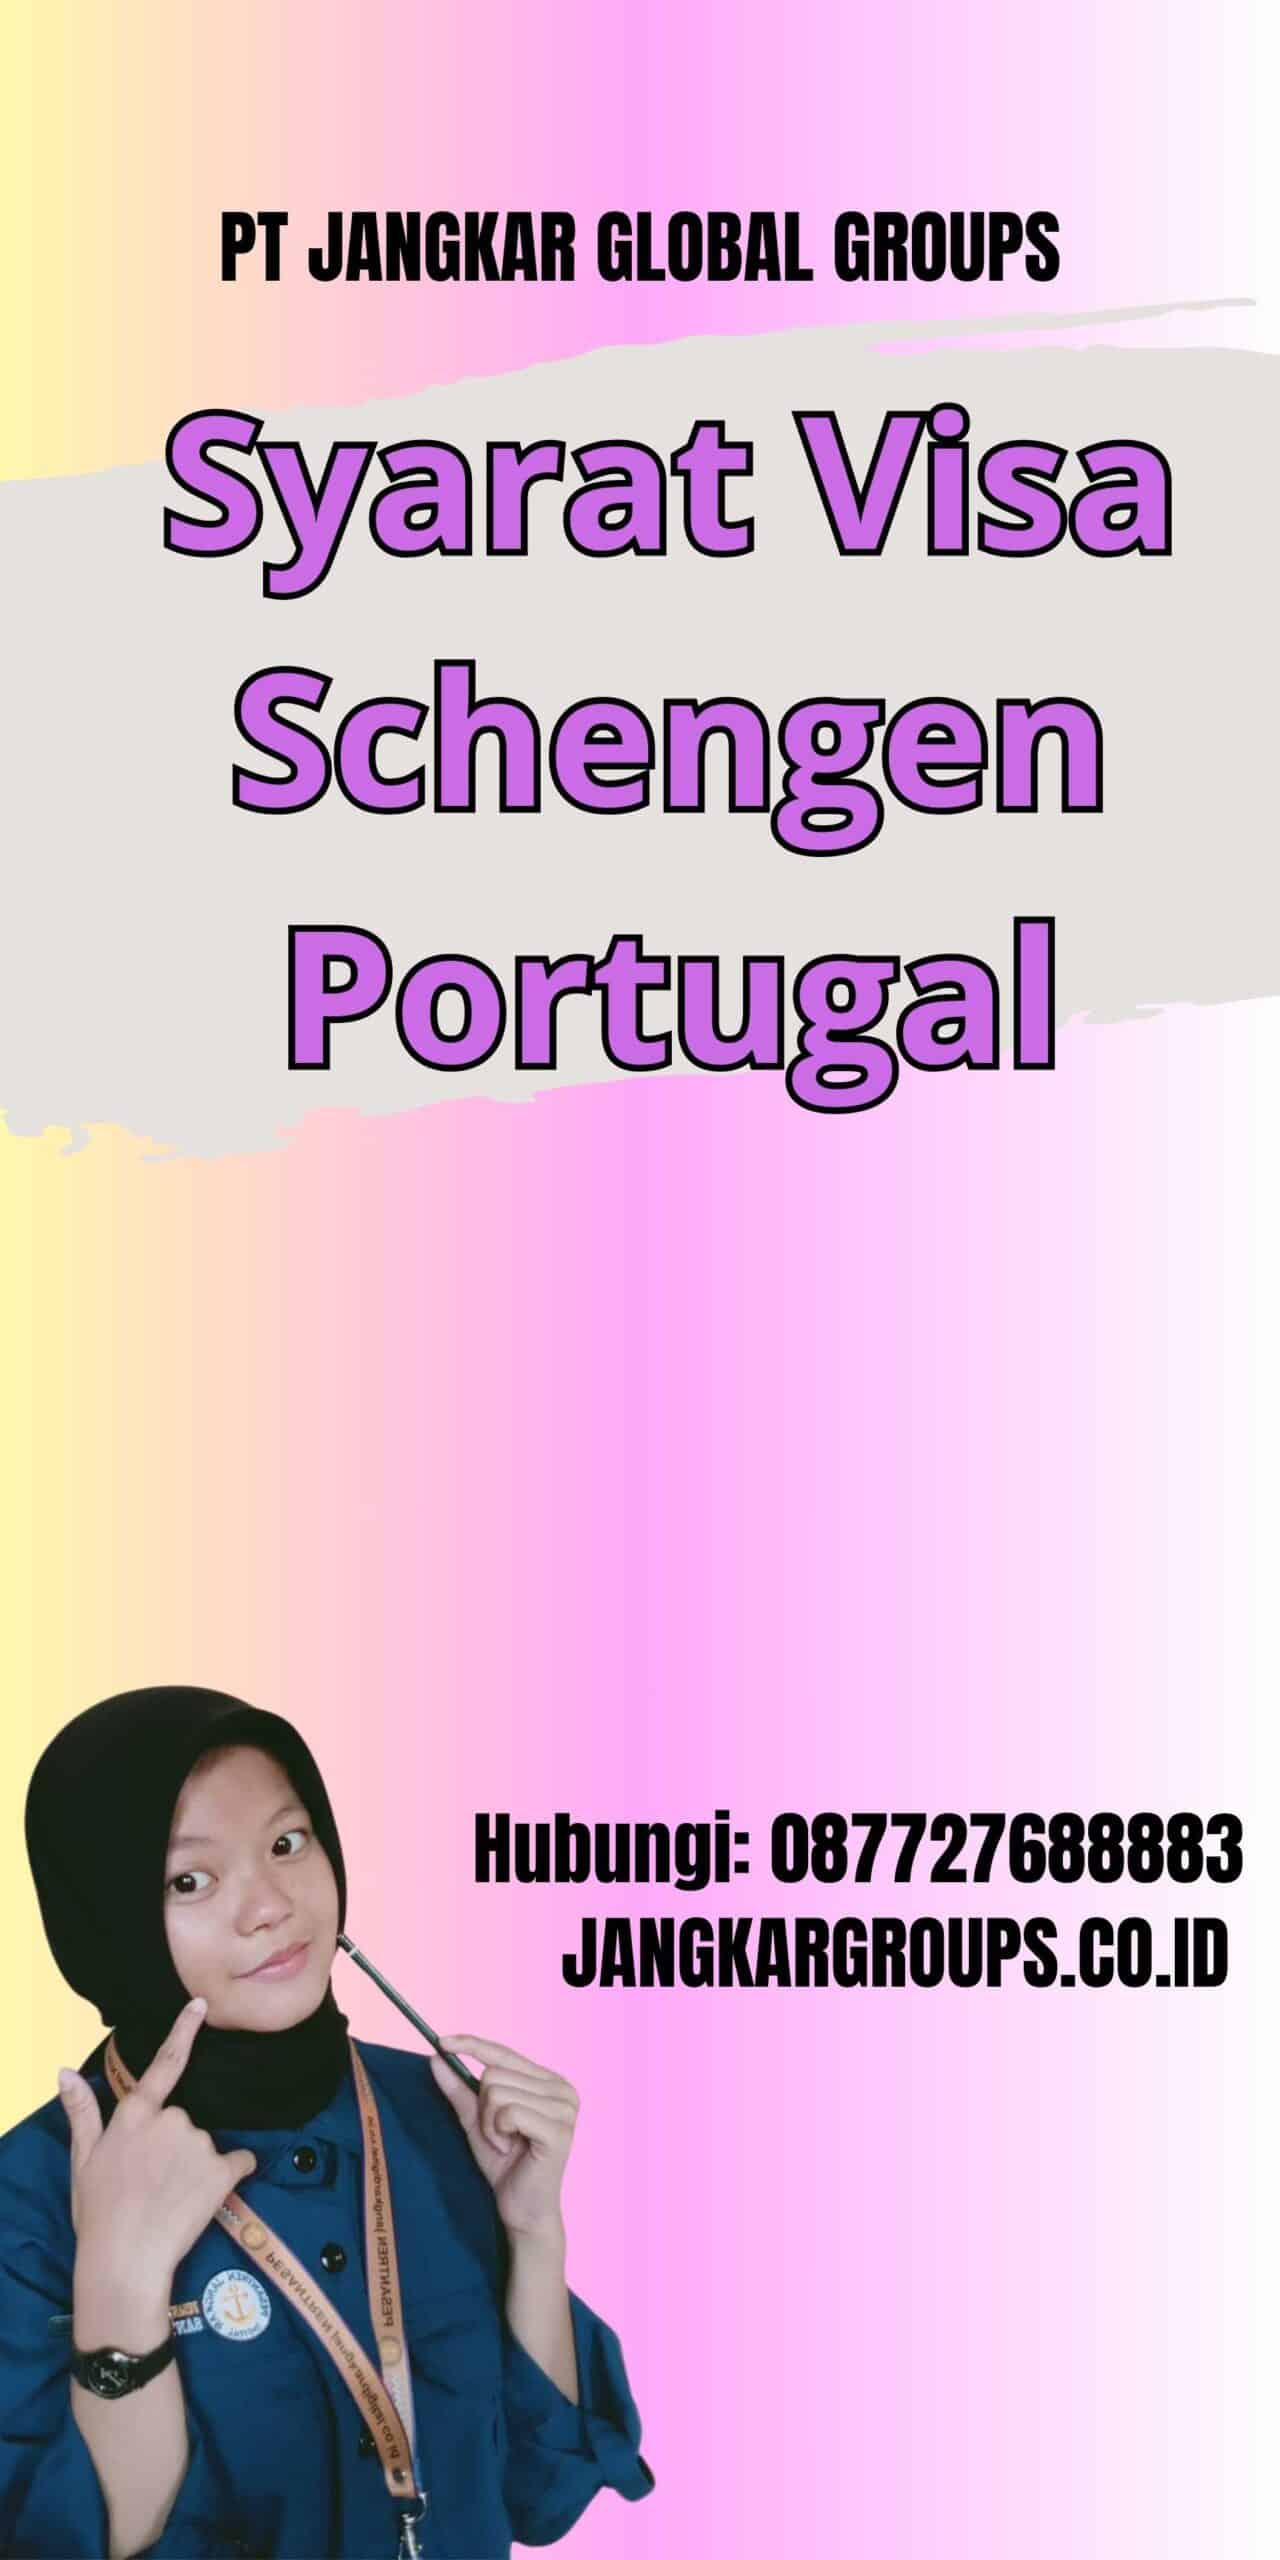 Syarat Visa Schengen Portugal